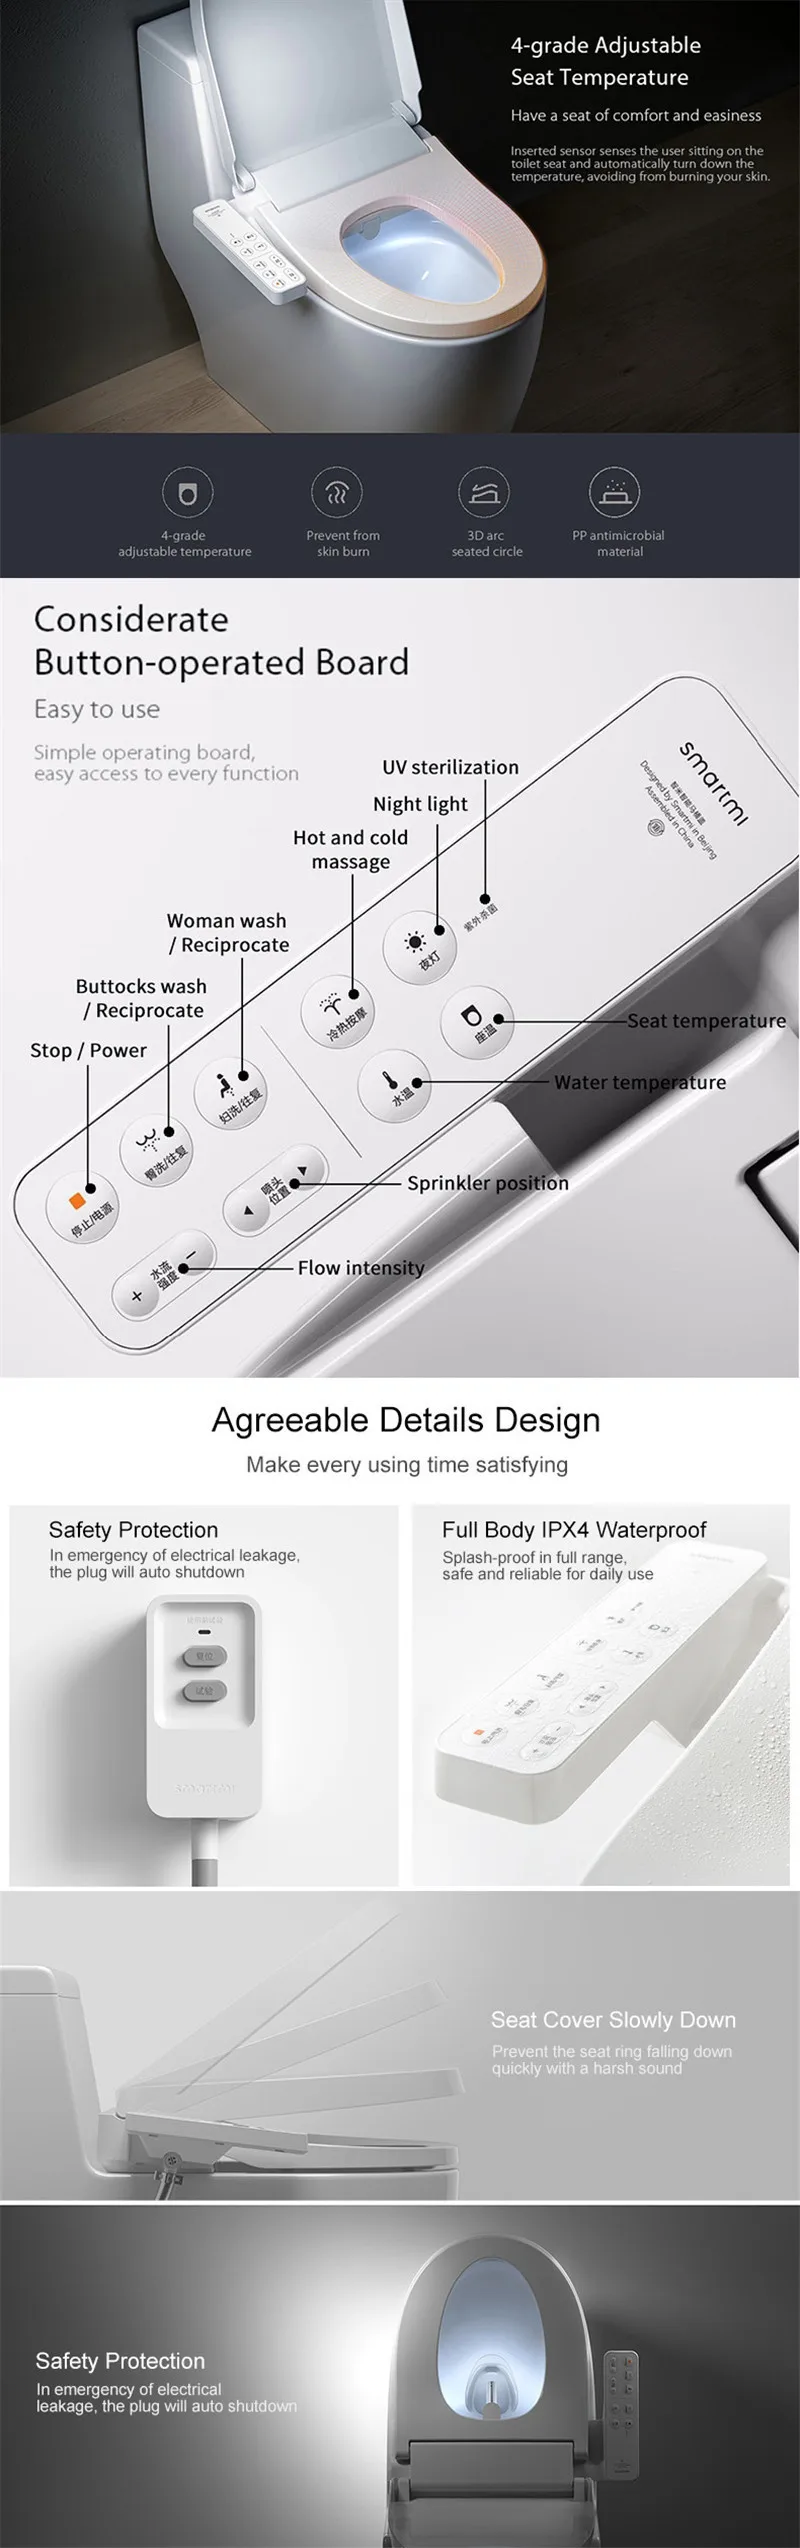 Xiaomi Mi многофункциональное умное "сиденье для унитаза с заботой о вашем здоровье светодиодный ночной Светильник 4-ступенчатая Регулируемая температура воды электронный биде унитаза